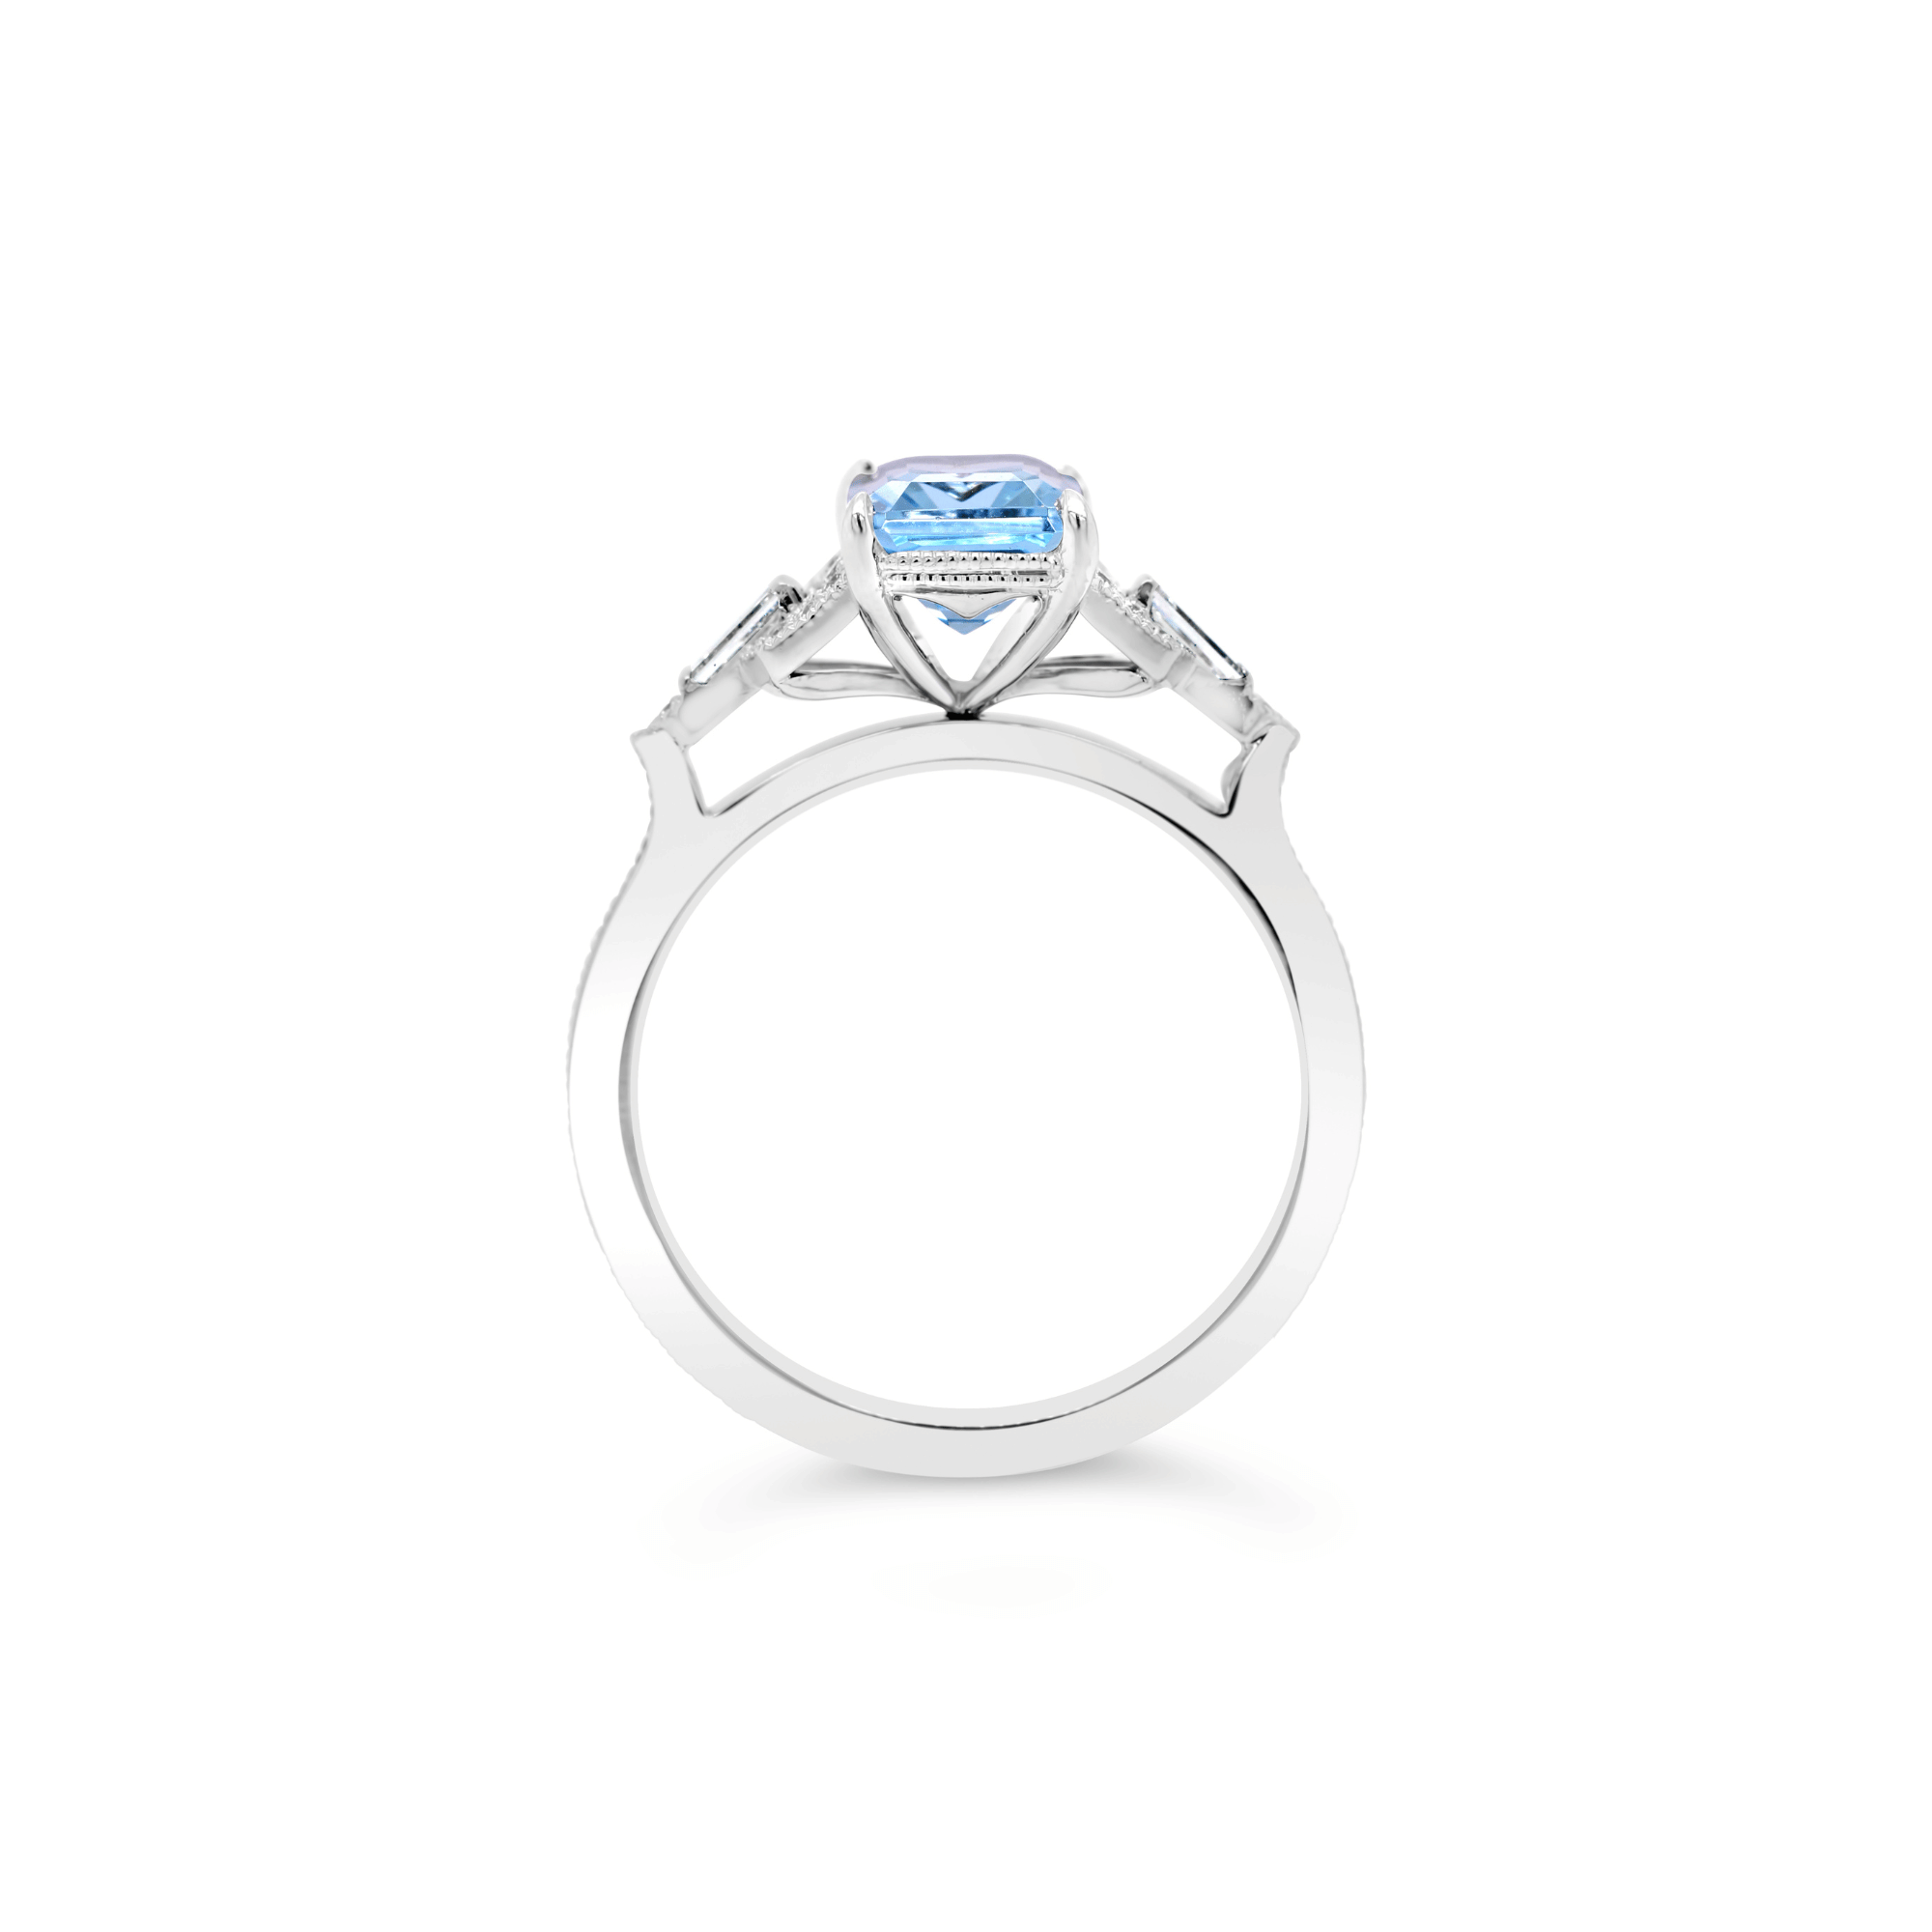 Emerald Cut Aquamarine & Mixed Cut Diamond Ring